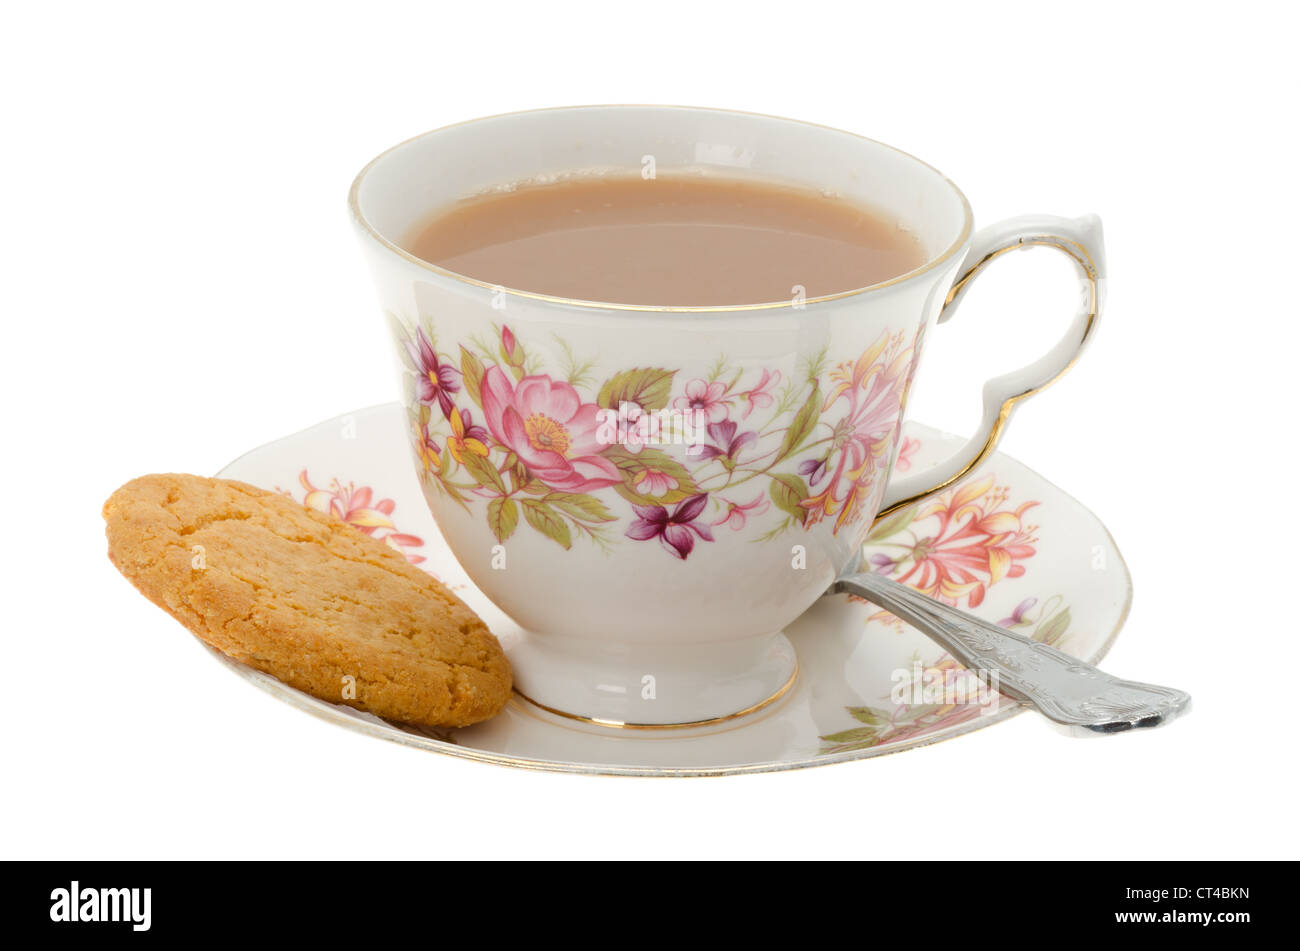 Tasse de thé avec un biscuit - studio photo avec un fond blanc Banque D'Images